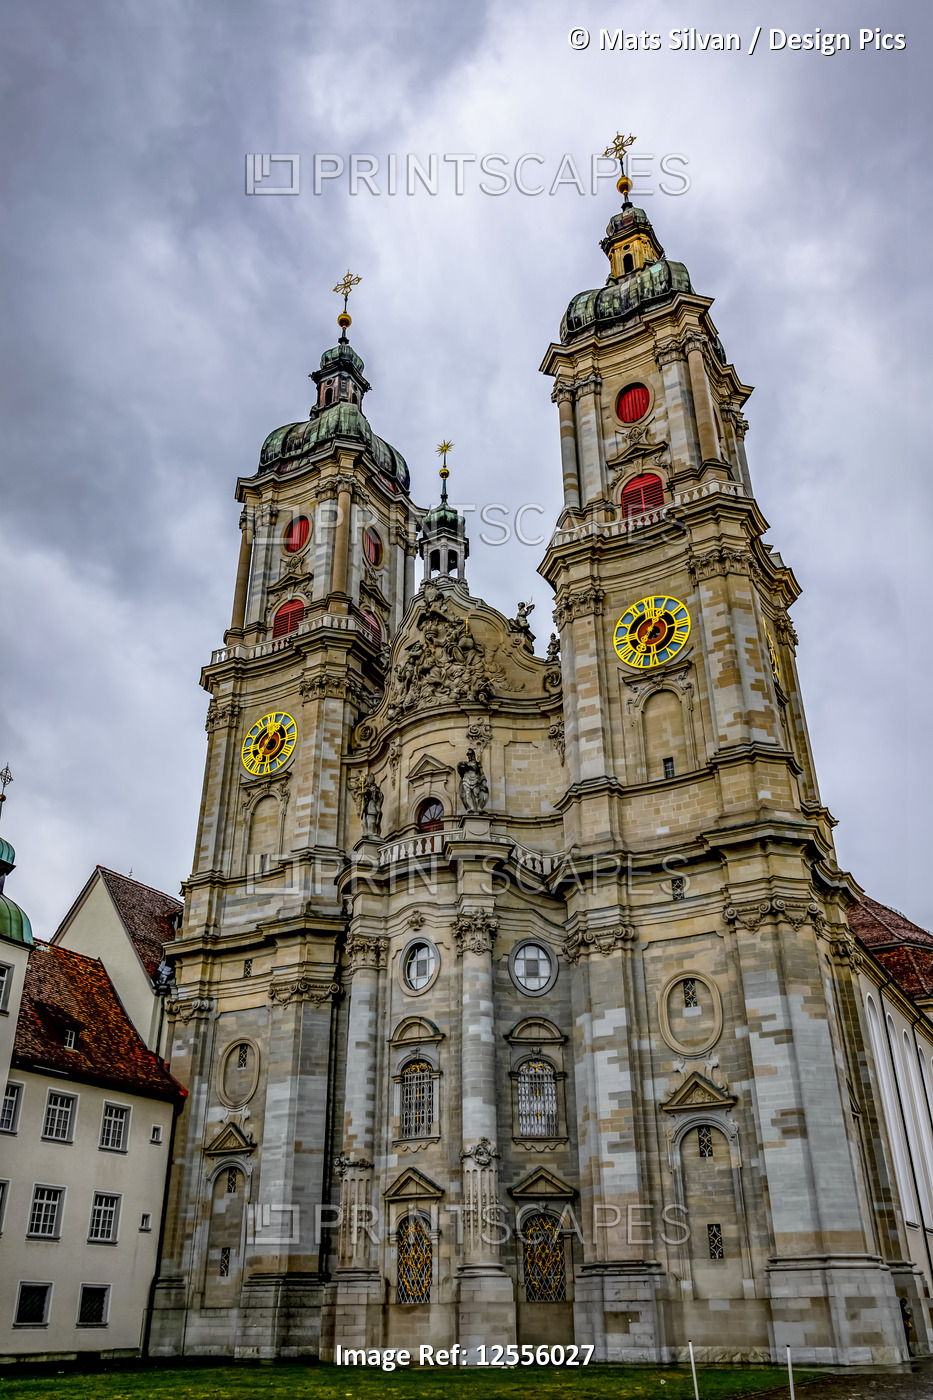 The Abbey Cathedral of Saint Gall; St. Gallen, St. Gallen, Switzerland